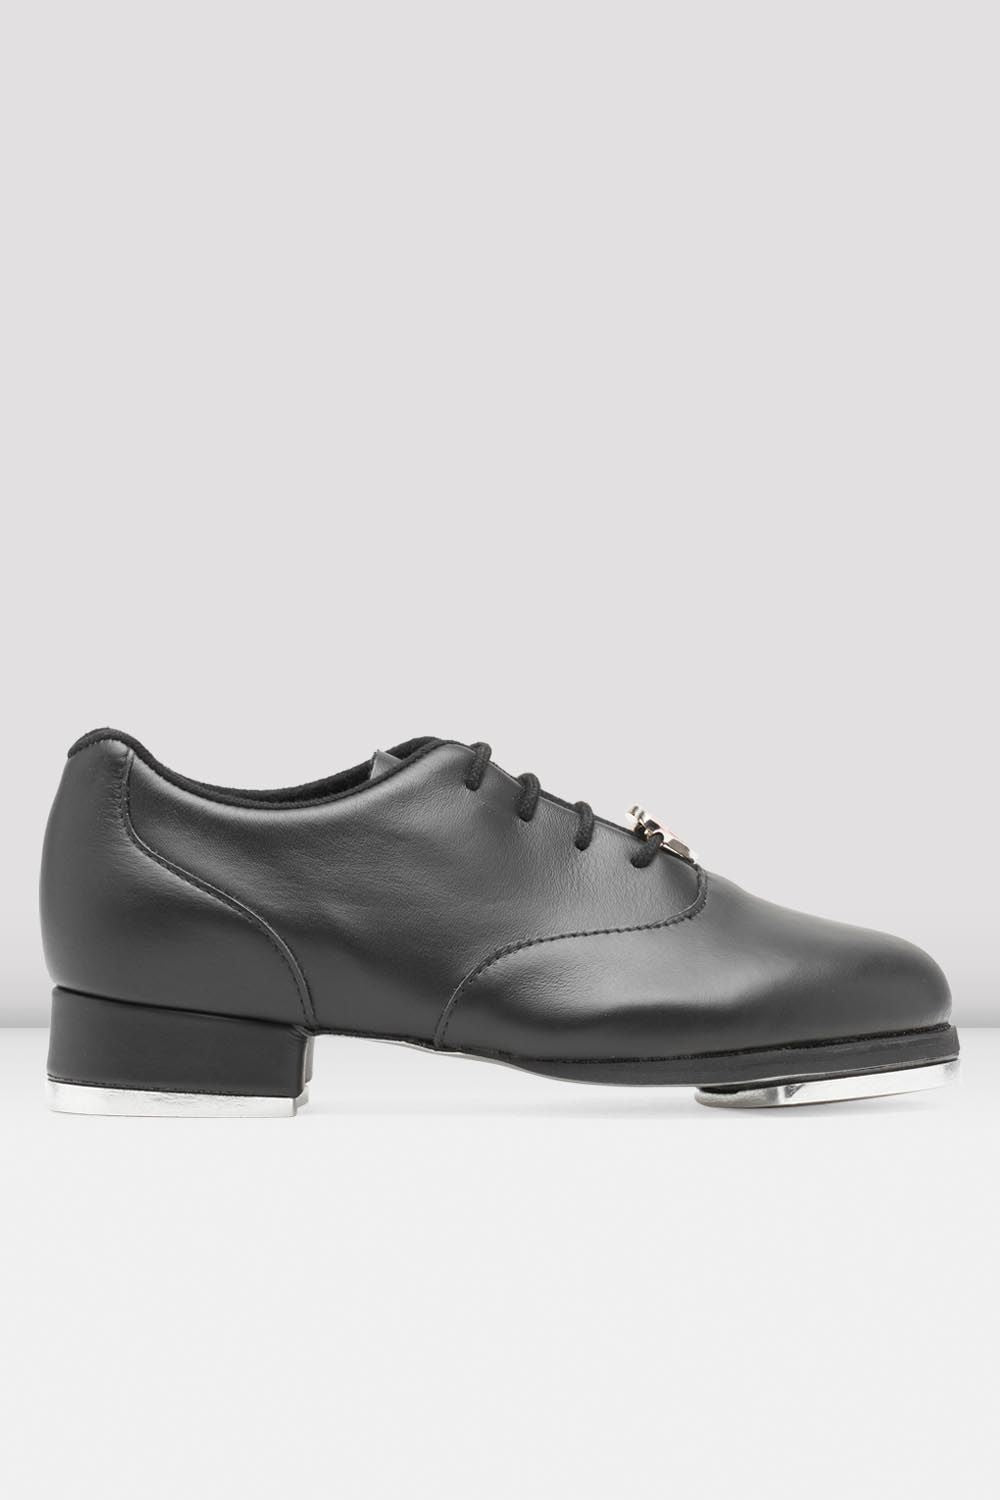 Louis Vuitton Black Leather Backstage Flat Sandals Size 9.5/40